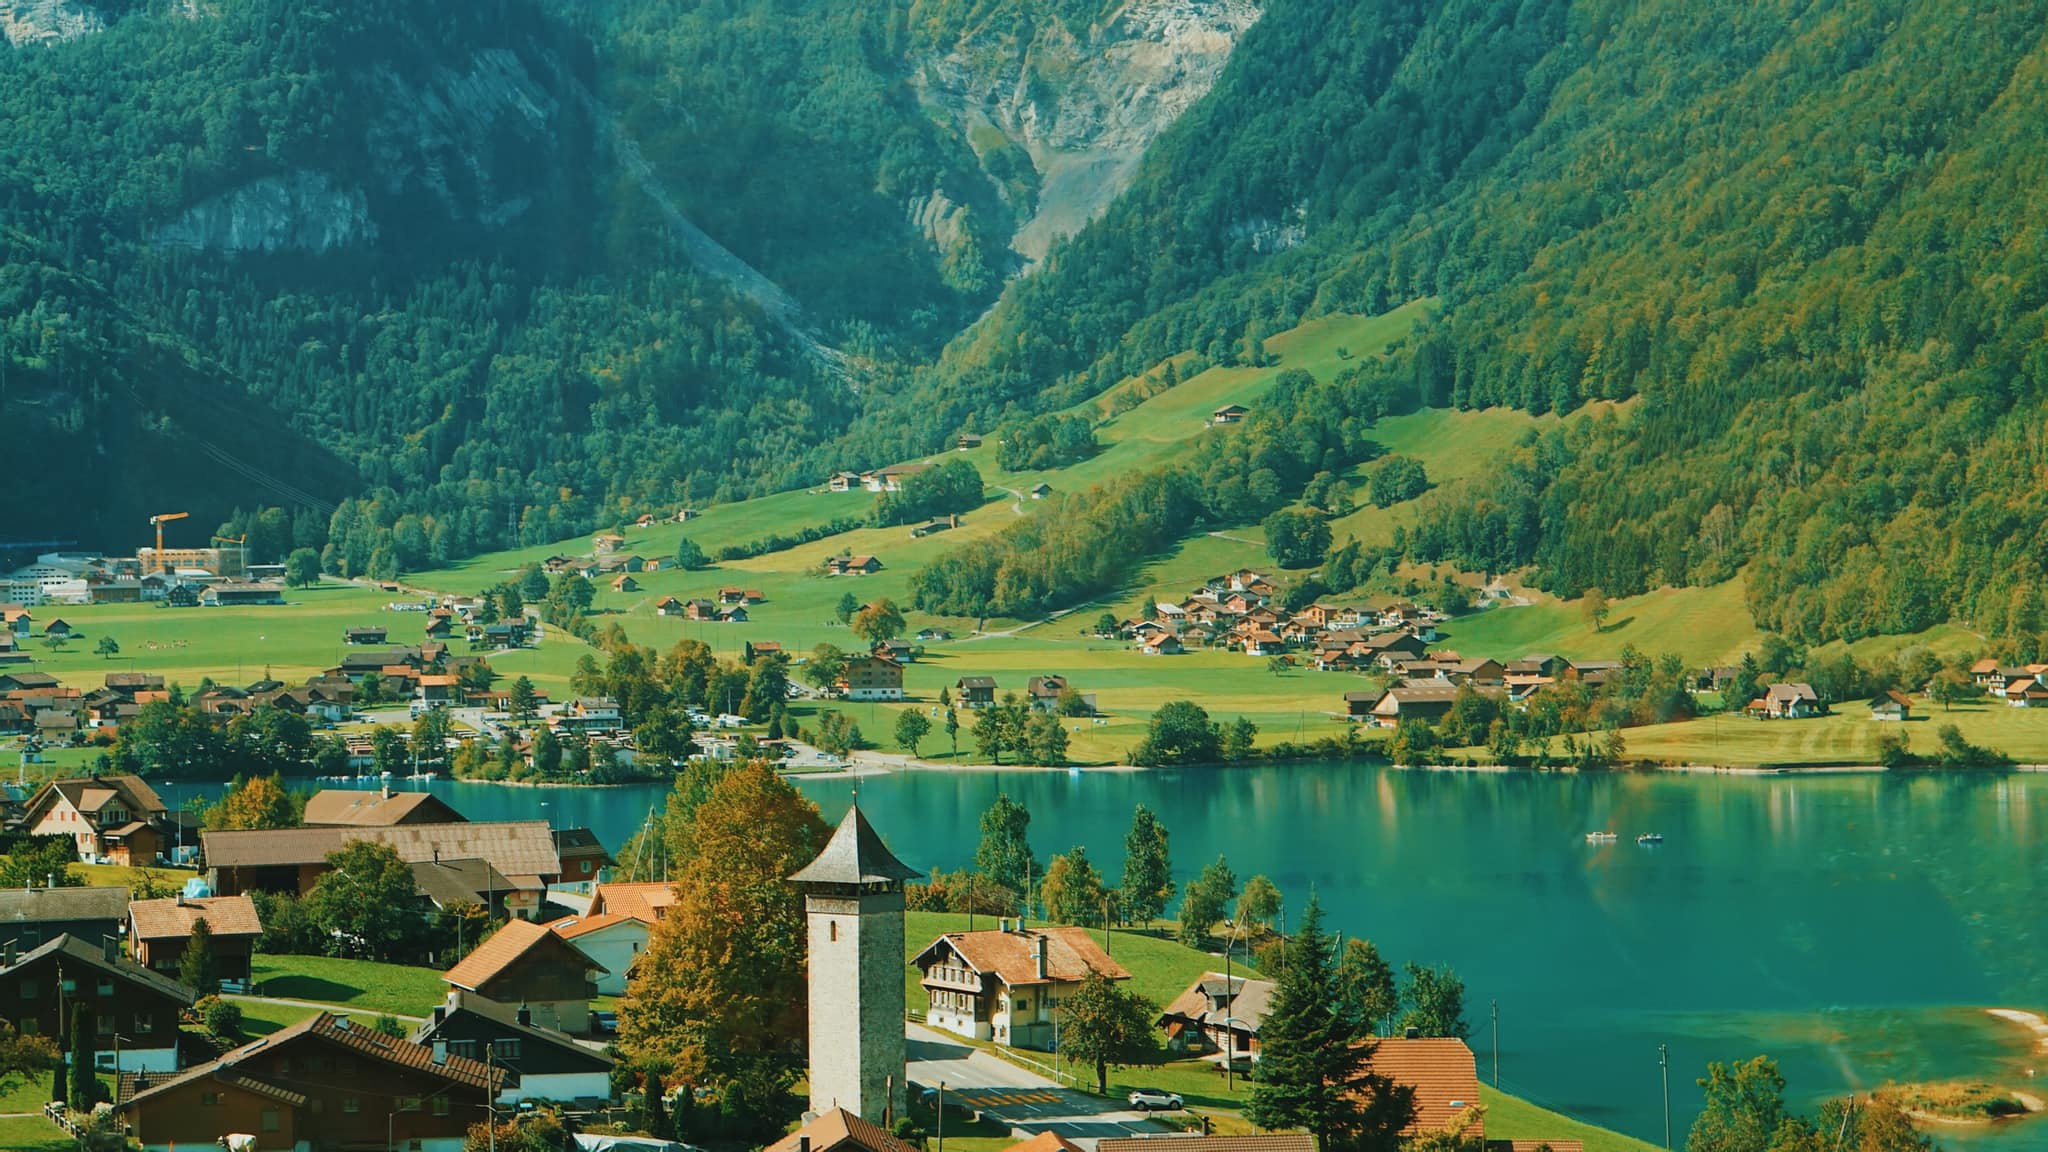 Hình nền máy tính về Thụy Sĩ sẽ đưa bạn đến với một thế giới đầy mê hoặc và lãng mạn. Với những cảnh quan tuyệt đẹp, những ngôi làng truyền thống và những tòa nhà cổ kính, bạn sẽ không thể rời mắt khỏi những hình ảnh này.